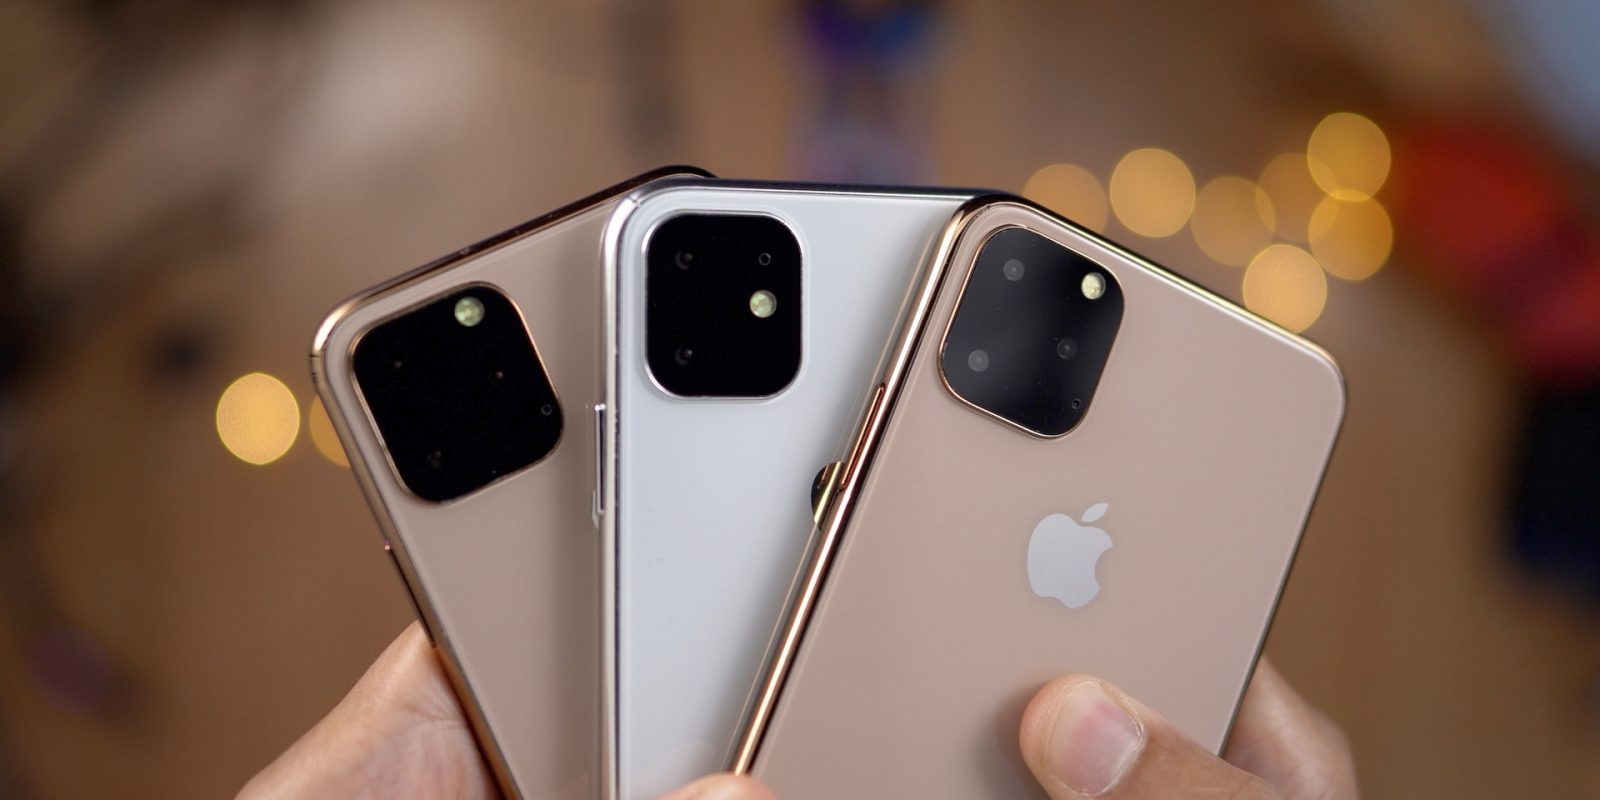 Apple pressionará fabricantes para fornecimento maior para atender 75 milhões de dispositivos em 2019